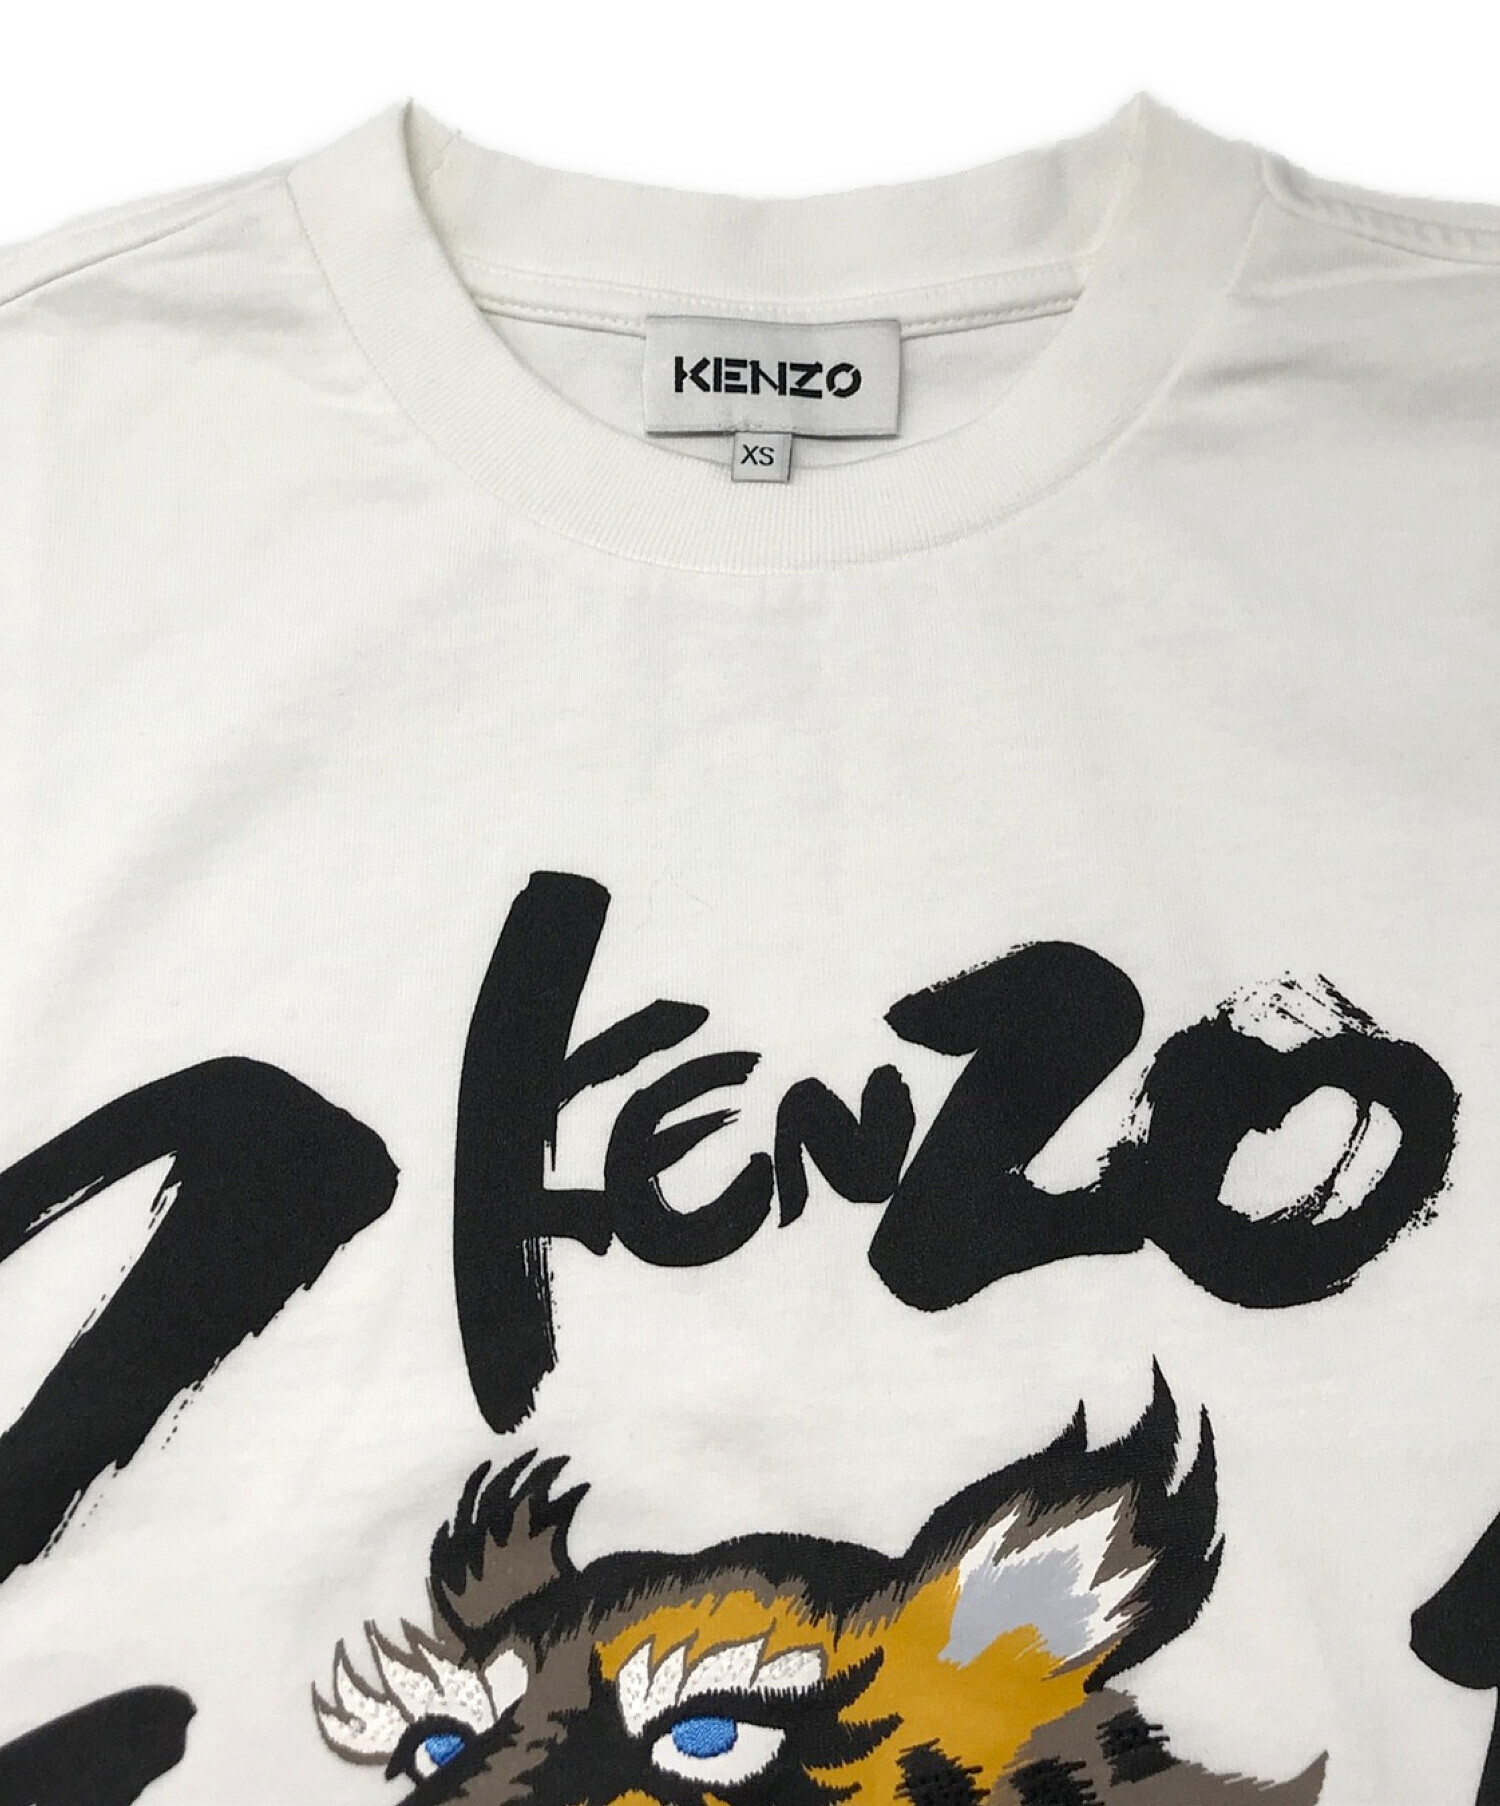 KENZO (ケンゾー) KANSAI YAMAMOTO (カンサイ ヤマモト) コラボ タイガー カットソー ホワイト サイズ:XS